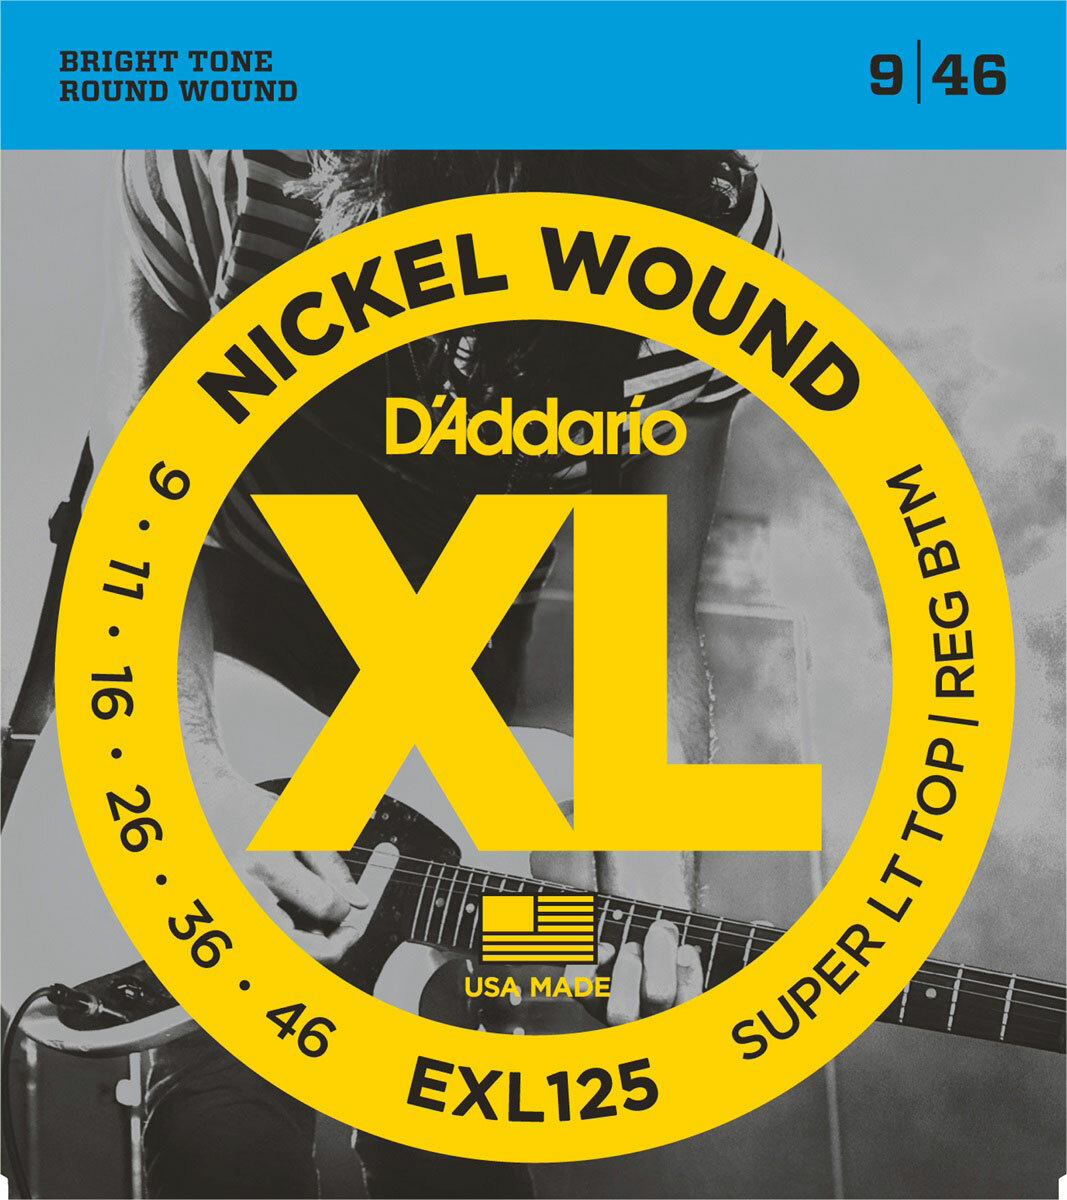 D'addario Jeu De 6 Cordes Exl125 Nickel Round Wound Sltrb 9-46 - Elektrische gitaarsnaren - Main picture